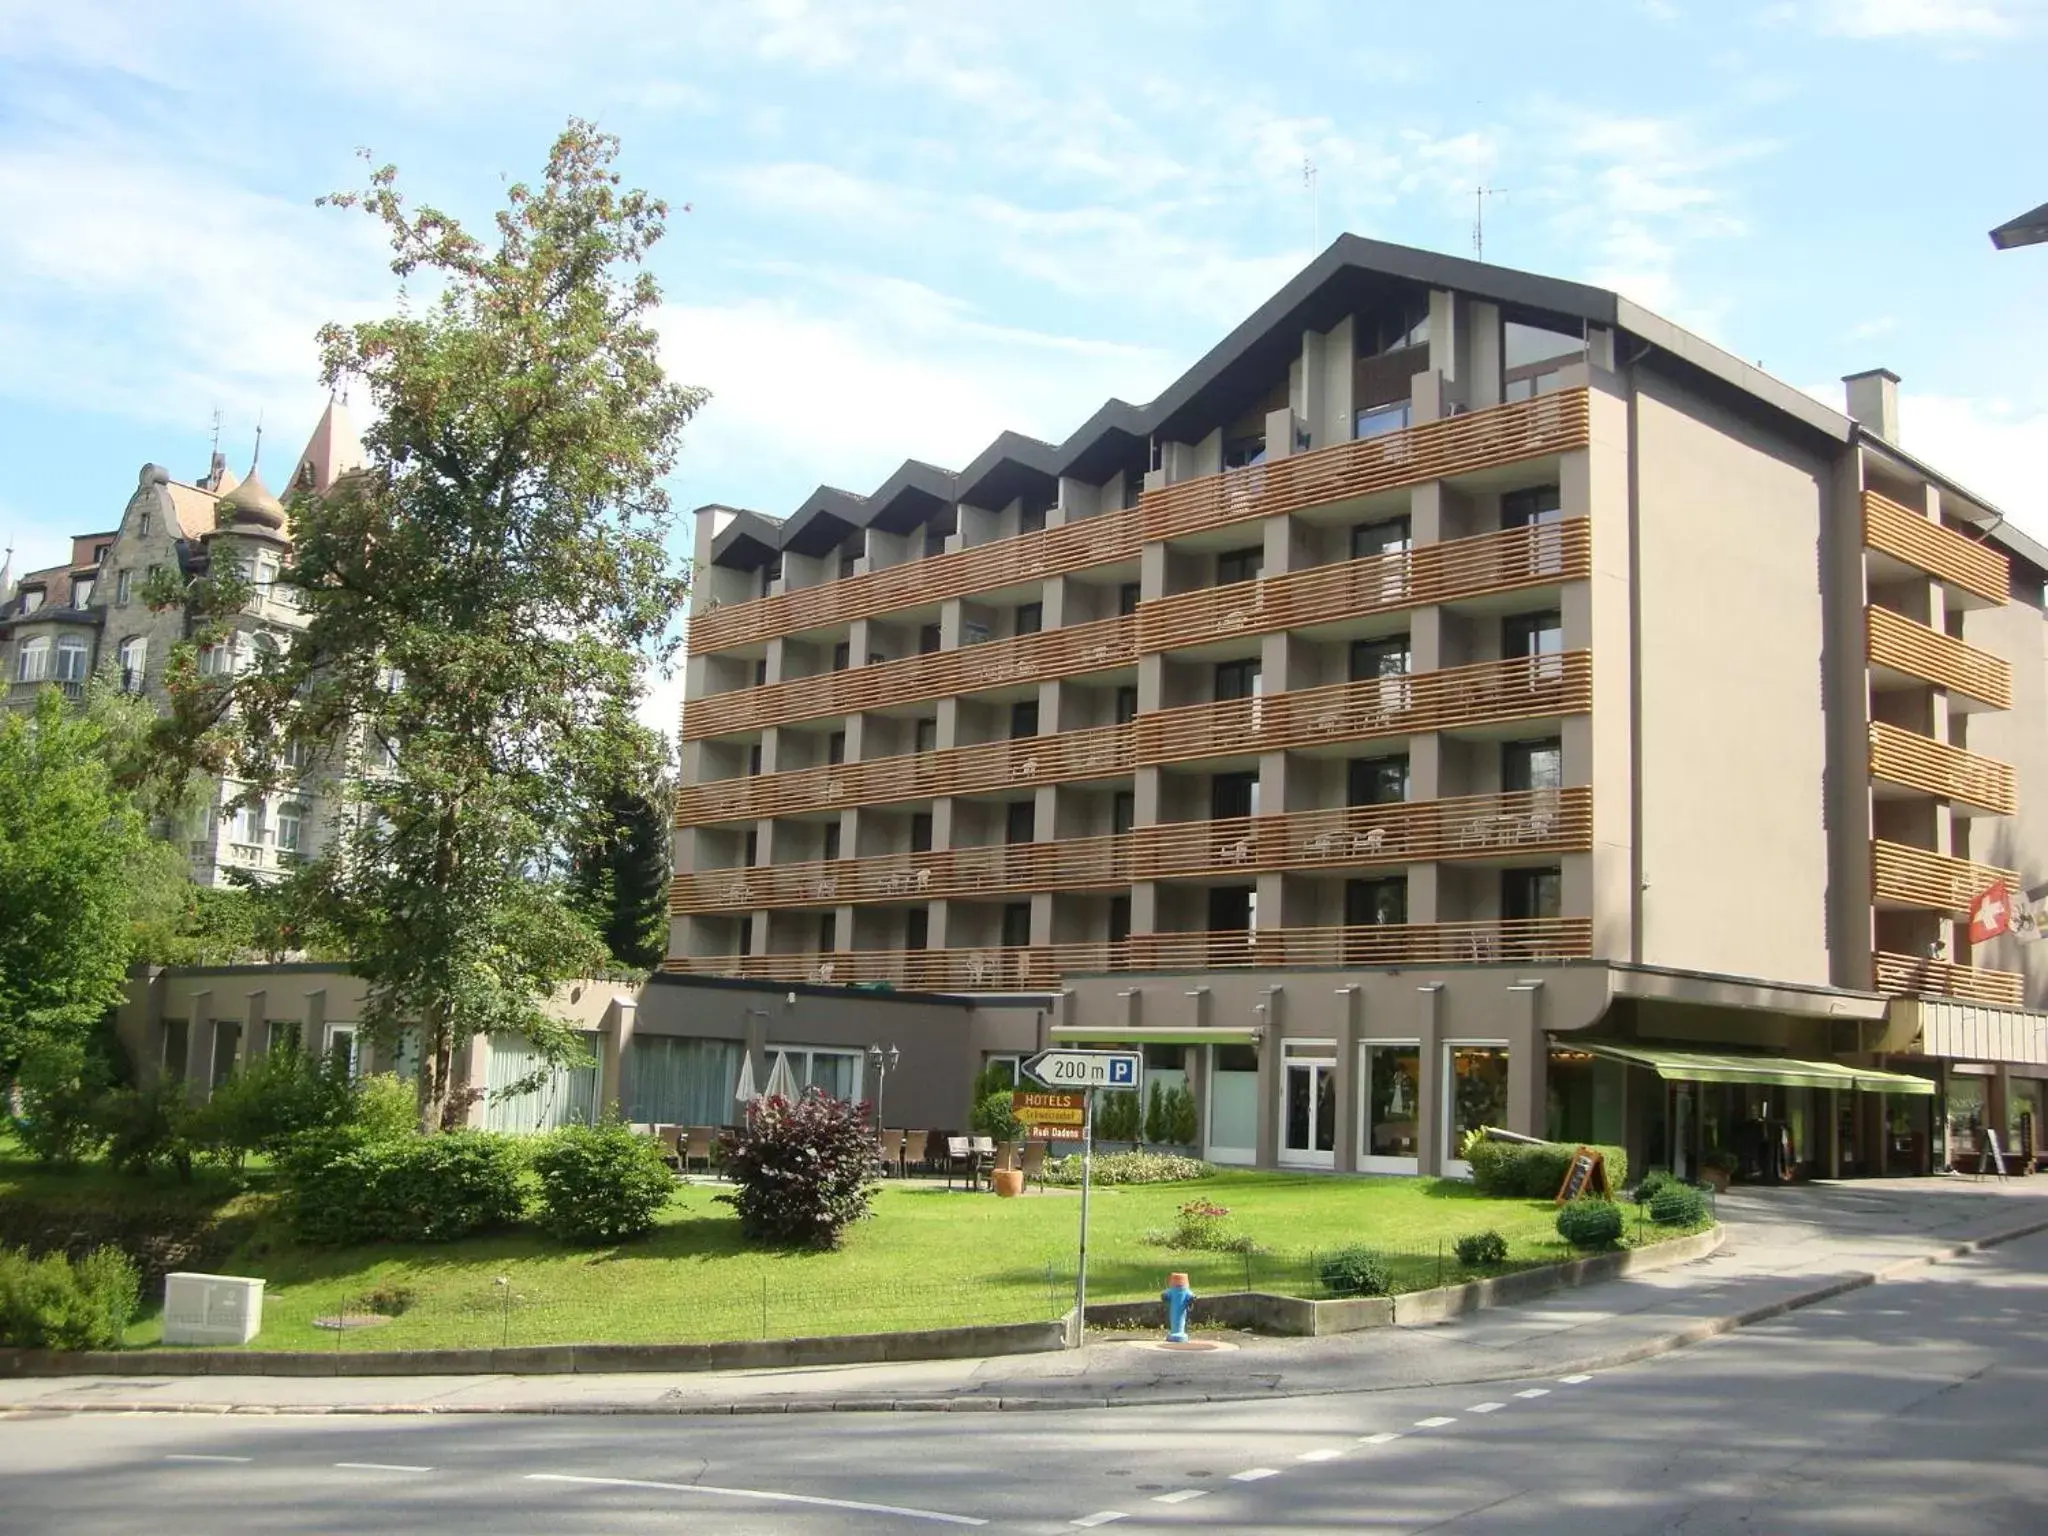 Facade/entrance, Property Building in Hotel des Alpes